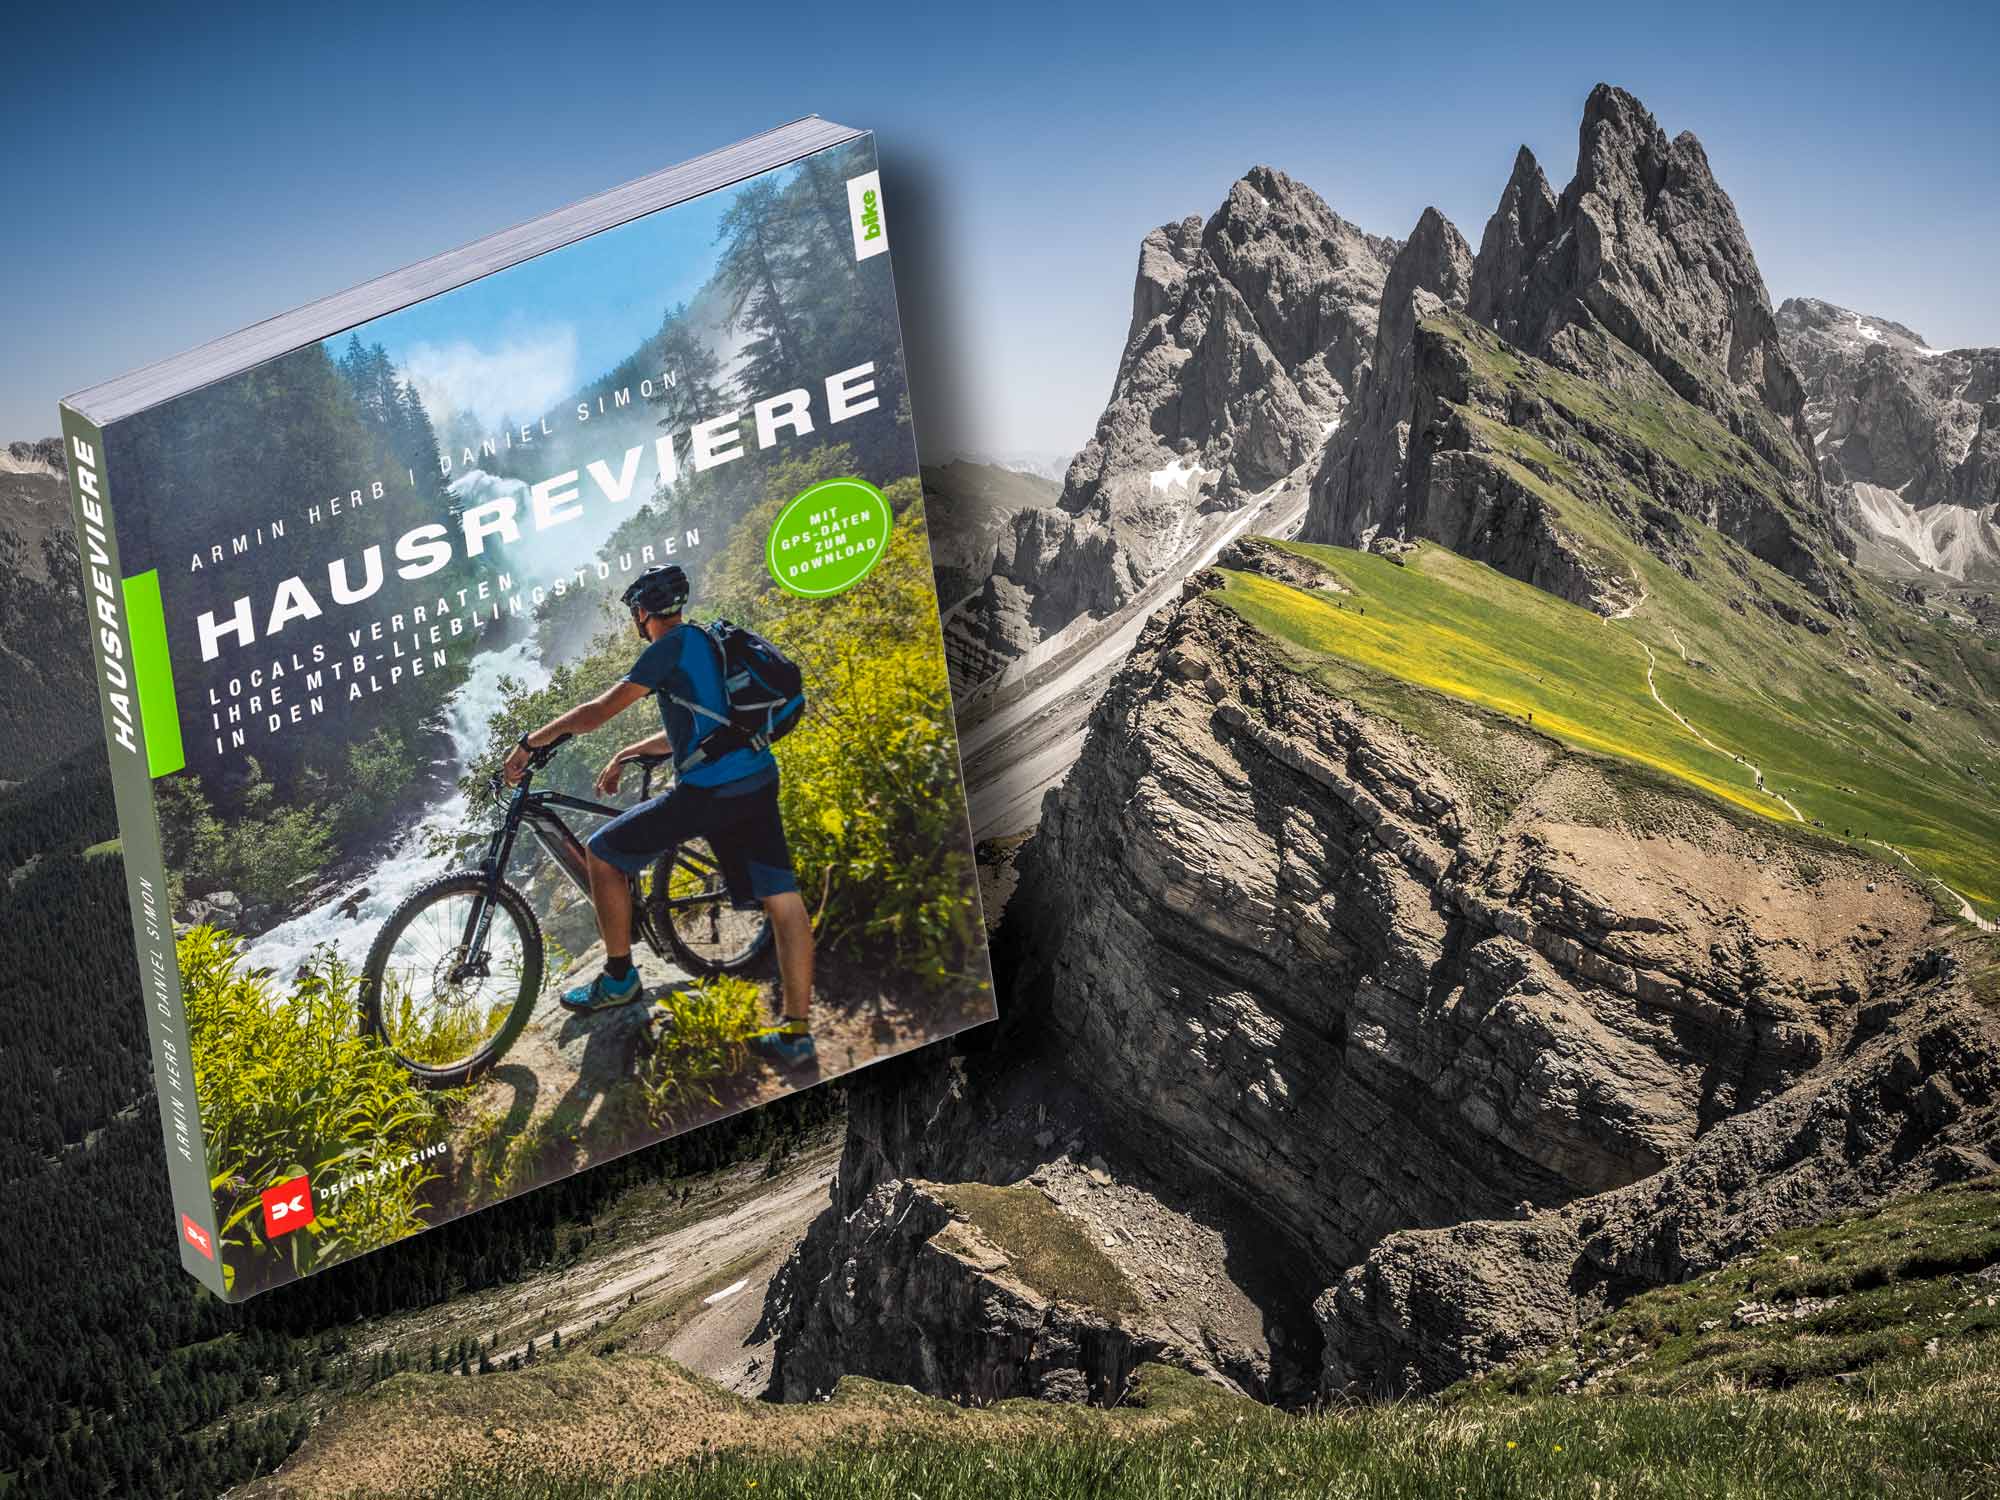 Buch – Hausreviere Locals verraten ihre MTB-Lieblingstouren in den Alpen von Daniel Simon und Armin Herb